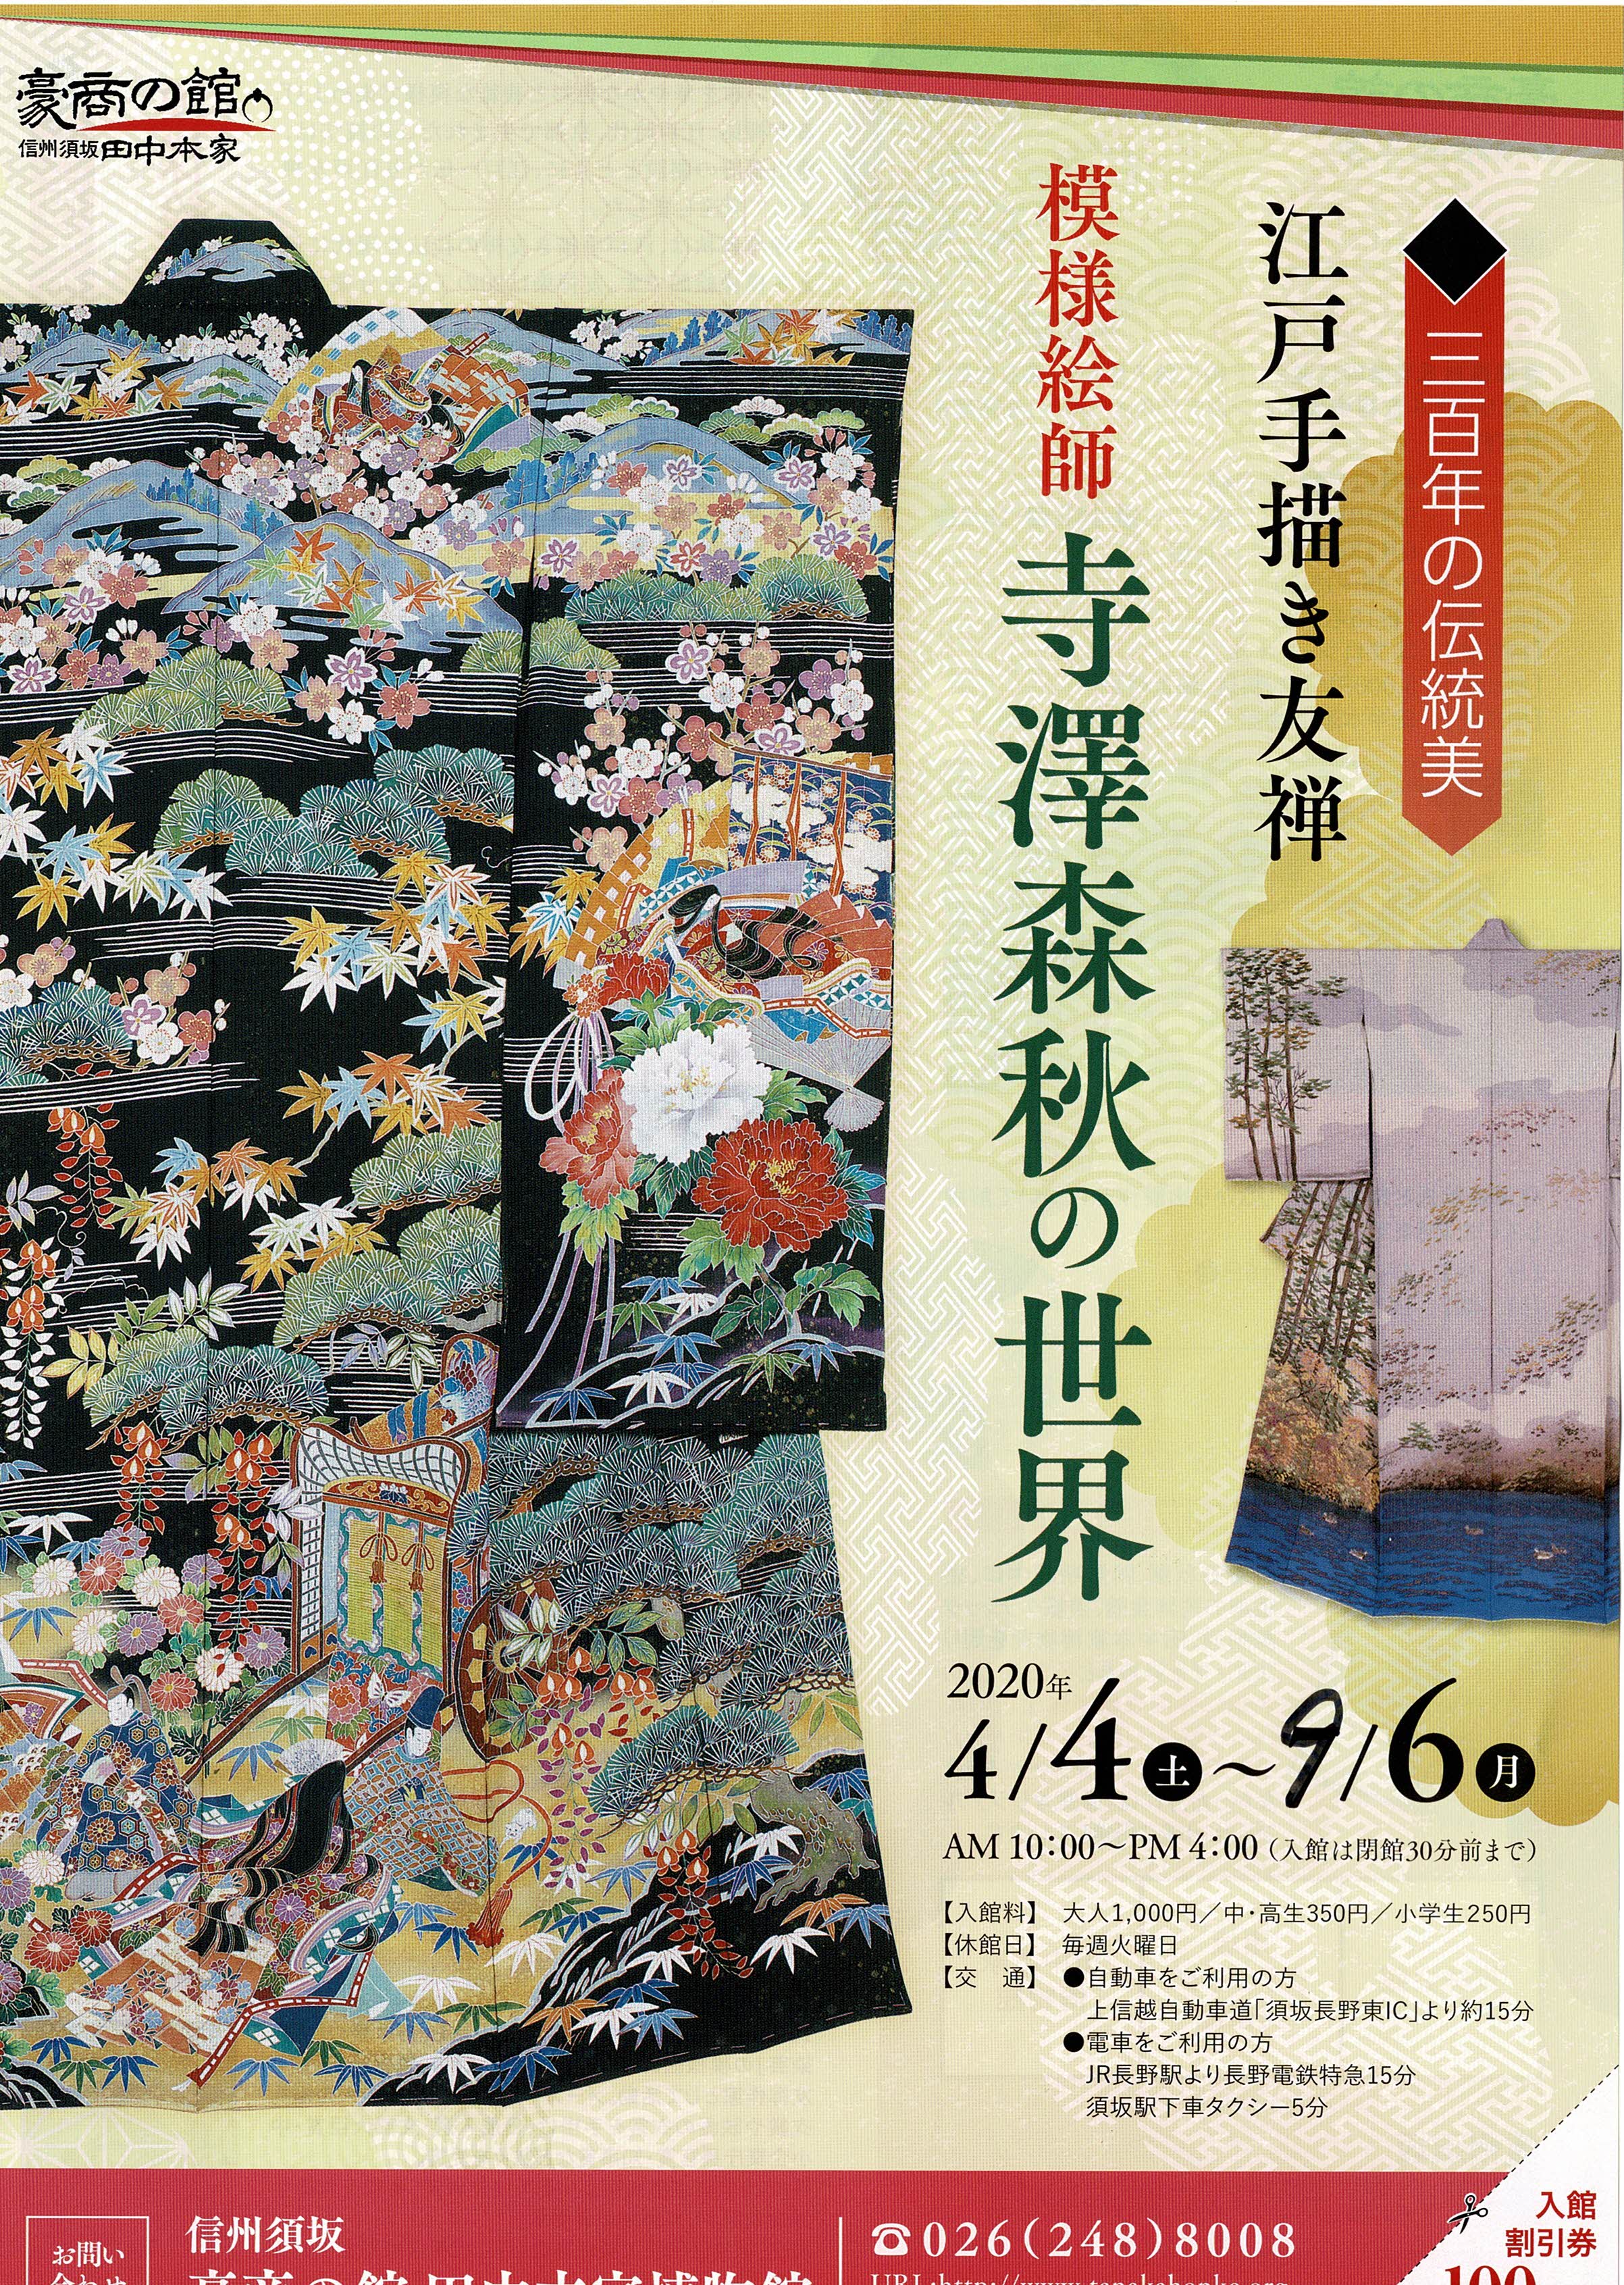 寺澤森秋の世界のポスターの写真